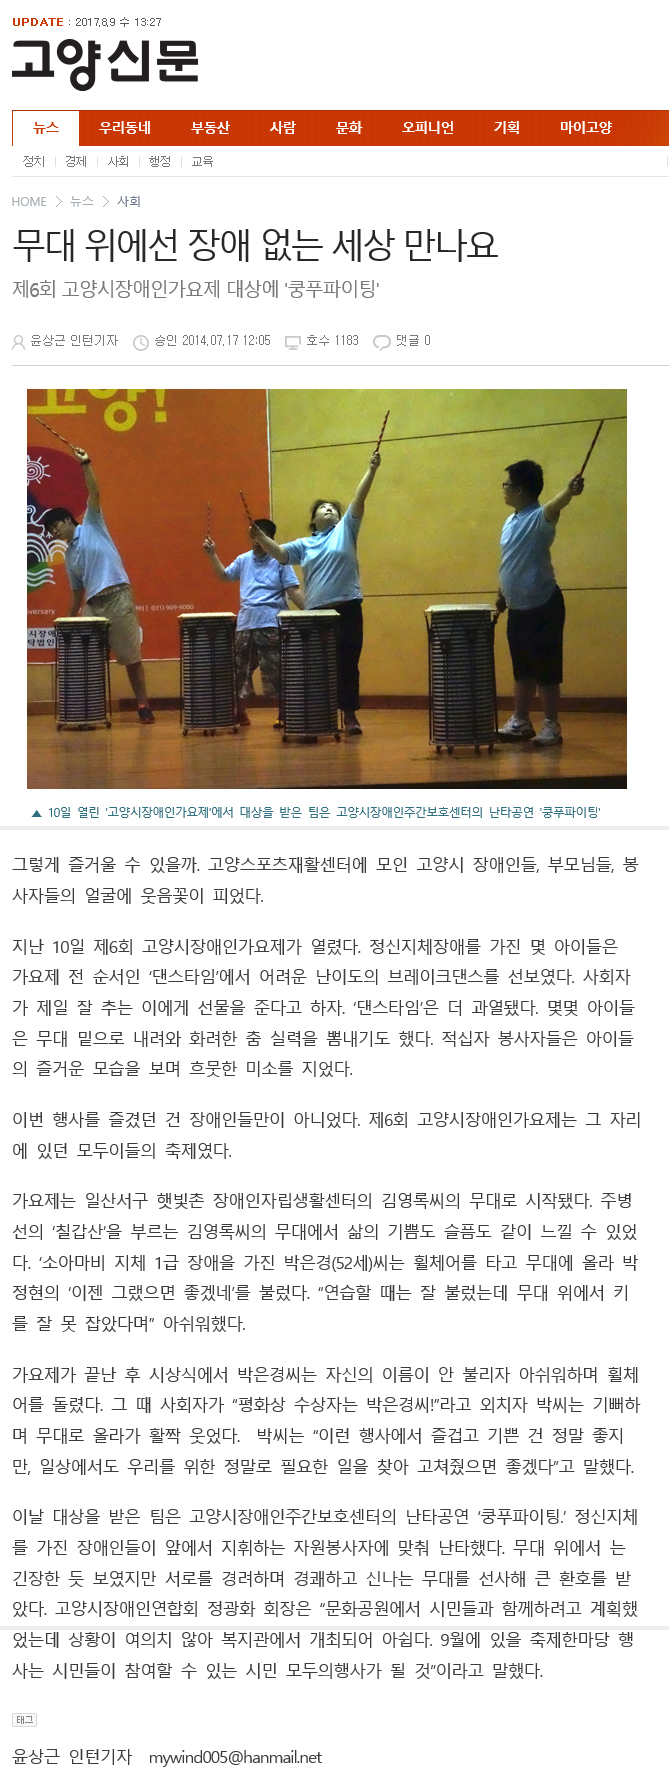 20140717_무대위에선장애없는세상만나요(고양신문).jpg